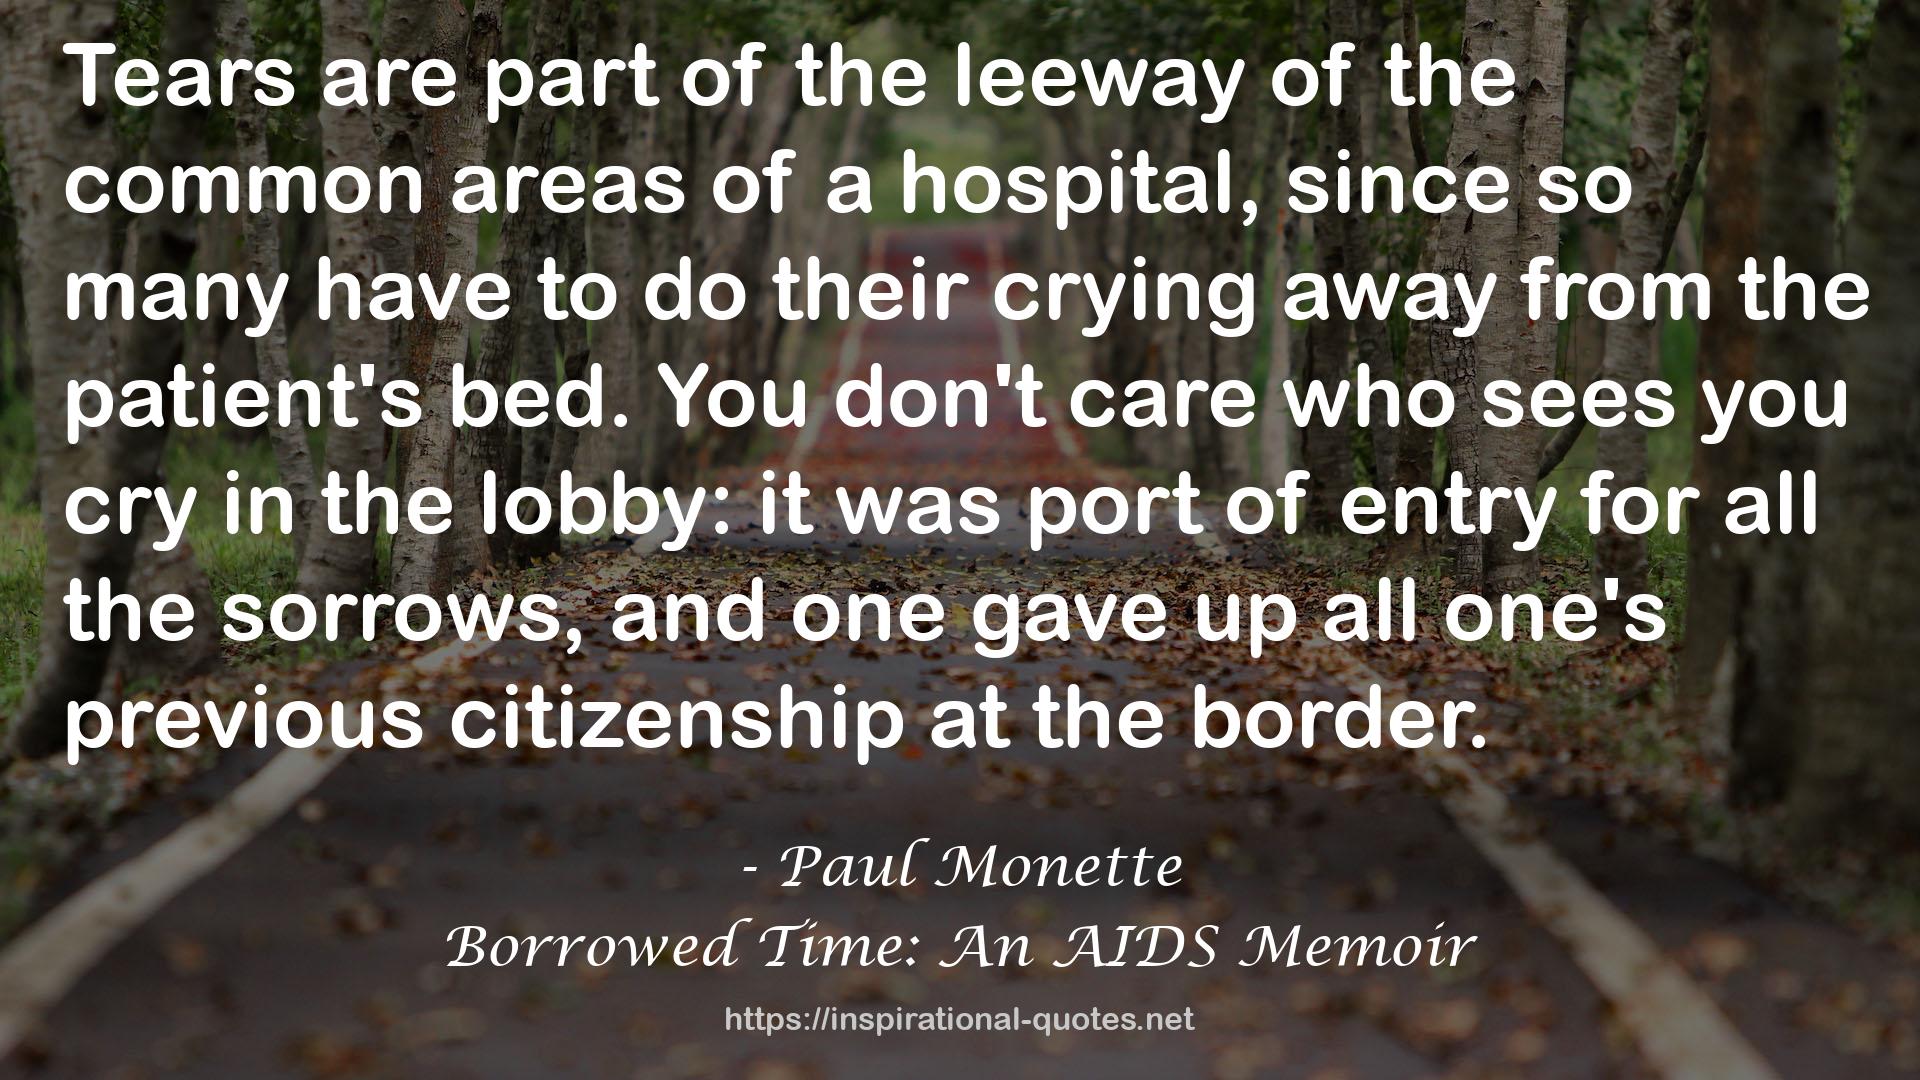 Borrowed Time: An AIDS Memoir QUOTES